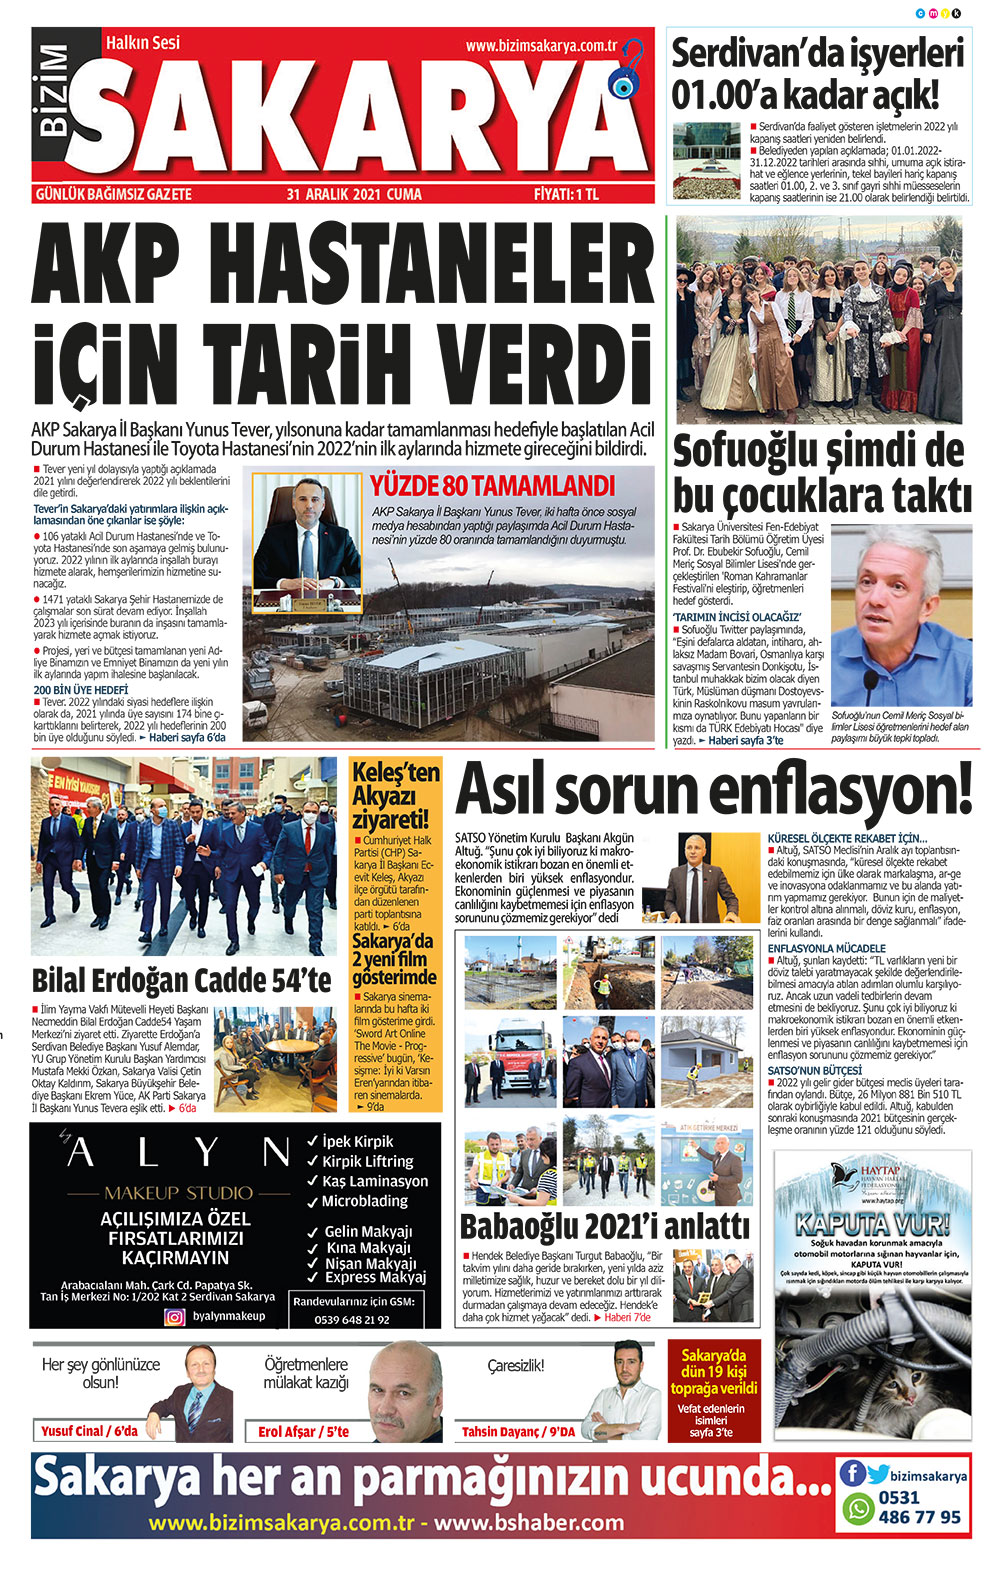 Bizim Sakarya Gazetesi - 31.12.2021 Manşeti